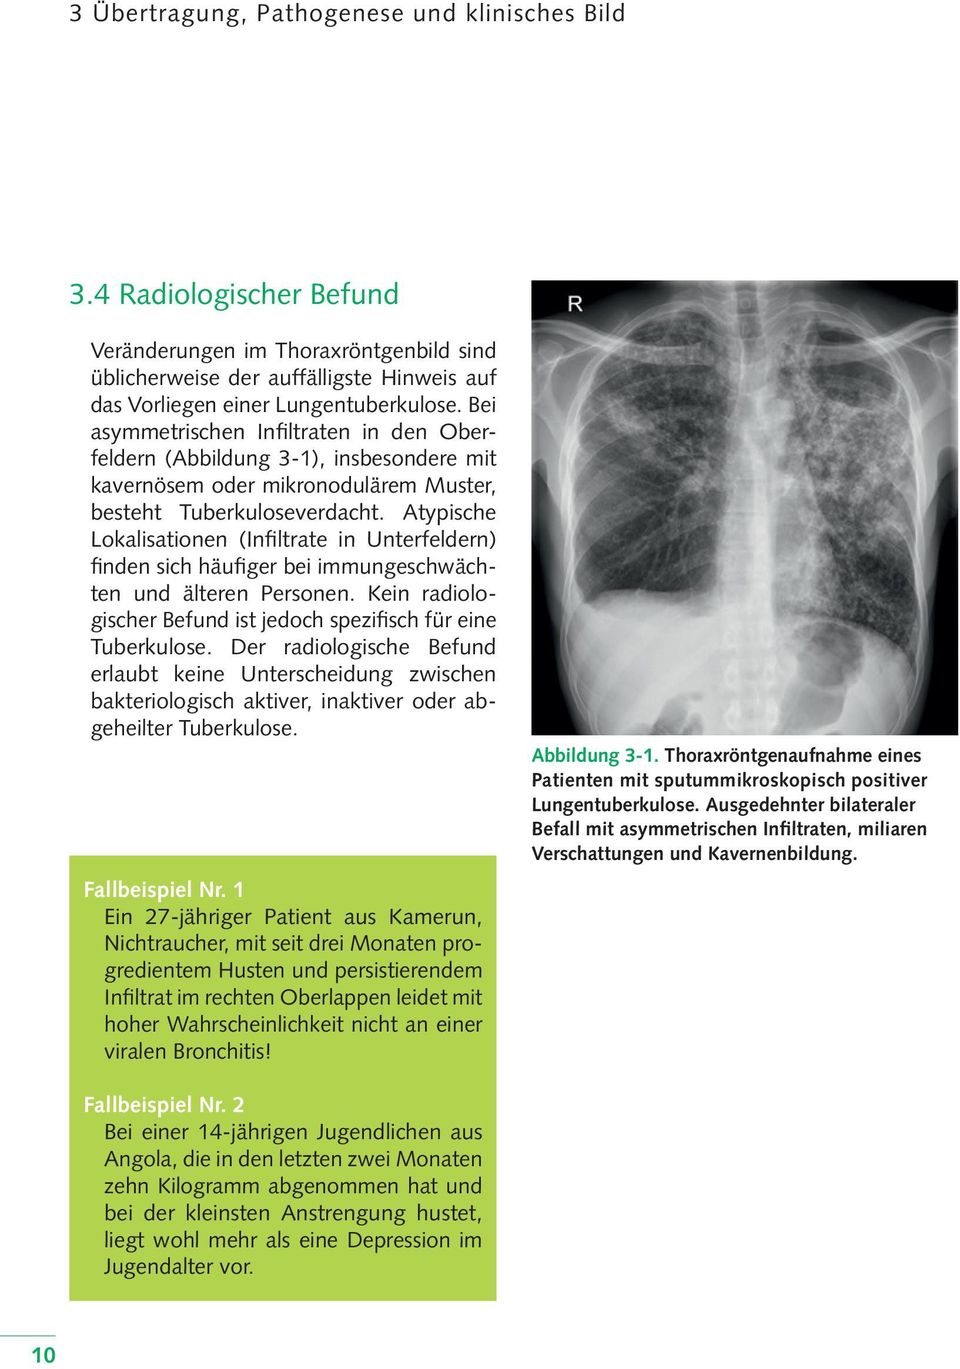 Atypische Lokalisationen (Infiltrate in Unterfeldern) finden sich häufiger bei immungeschwächten und älteren Personen. Kein radiologischer Befund ist jedoch spezifisch für eine Tuberkulose.